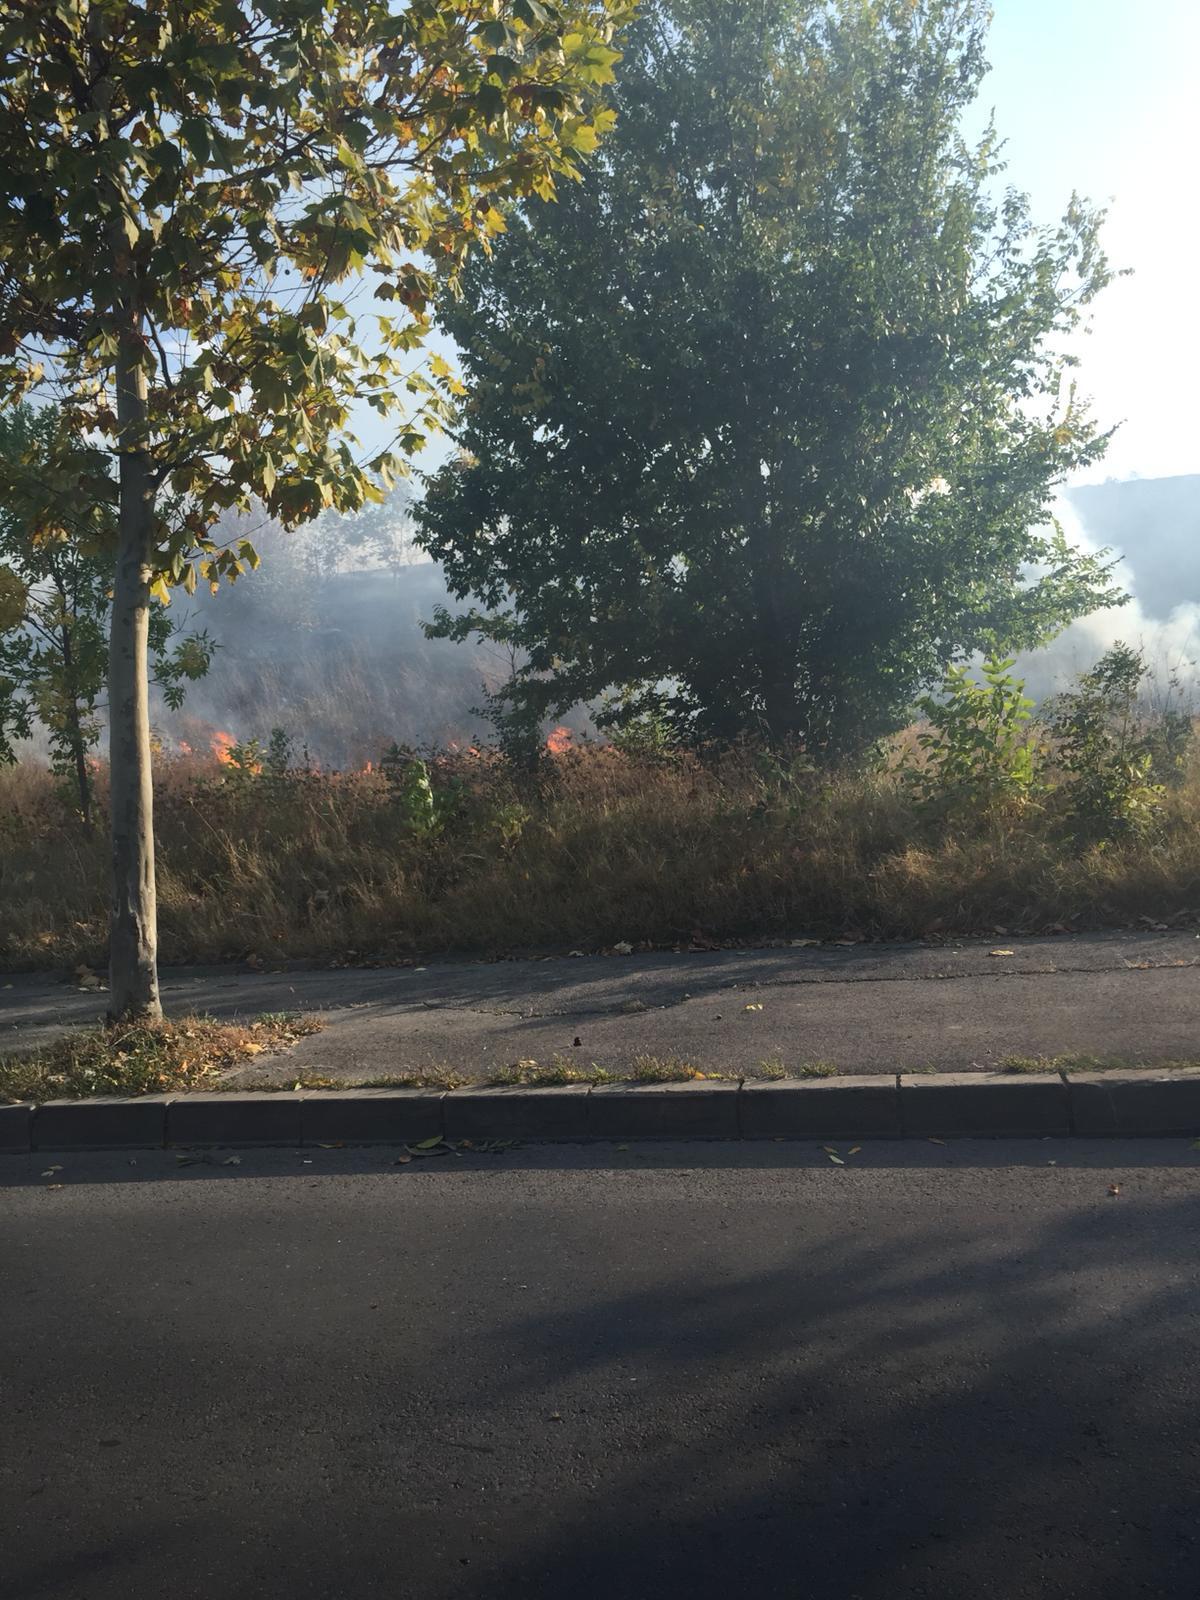 Pompierii din Bucureşti intervin pentru stingerea unui puternic incendiu de vegetaţie uscată care se manifestă pe şase mii de metri pătraţi; traficul pe Splaiul Unirii a fost restricţionat